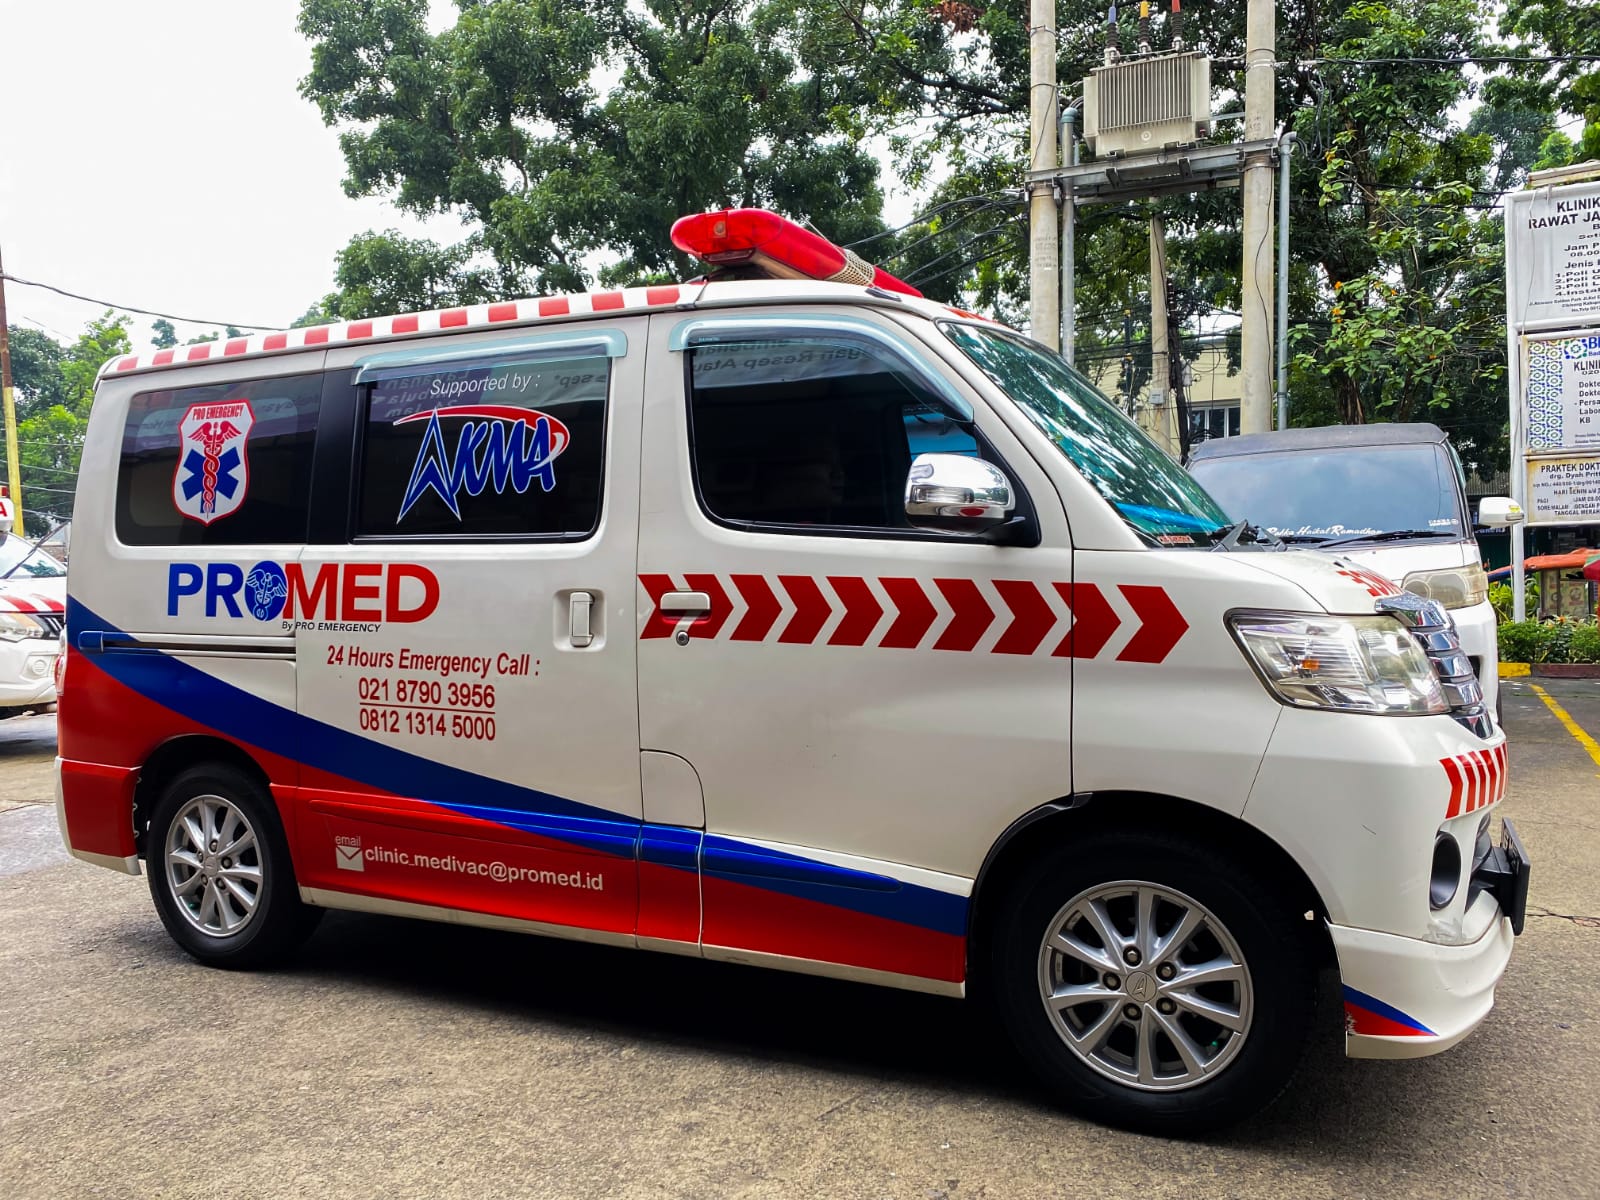 Ambulans Promed: Mengatasi Situasi Darurat Medis dengan Cepat dan Tanggap